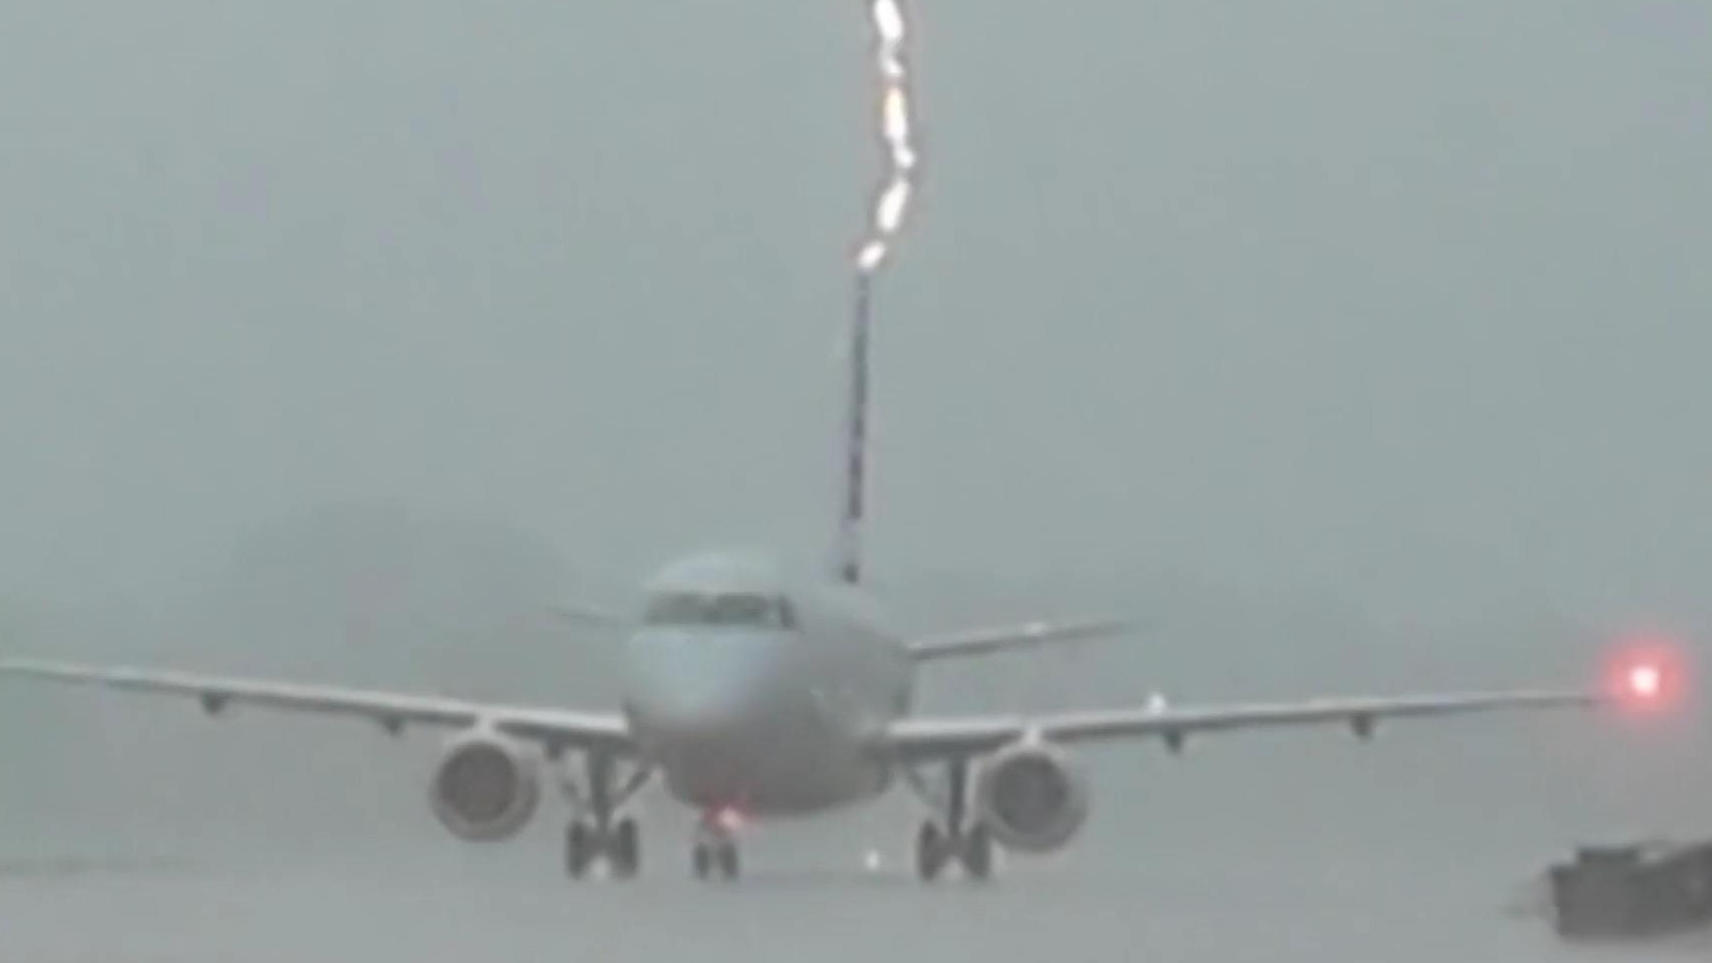 Blitz schlägt in Flugzeug ein Kurzer Schockmoment!